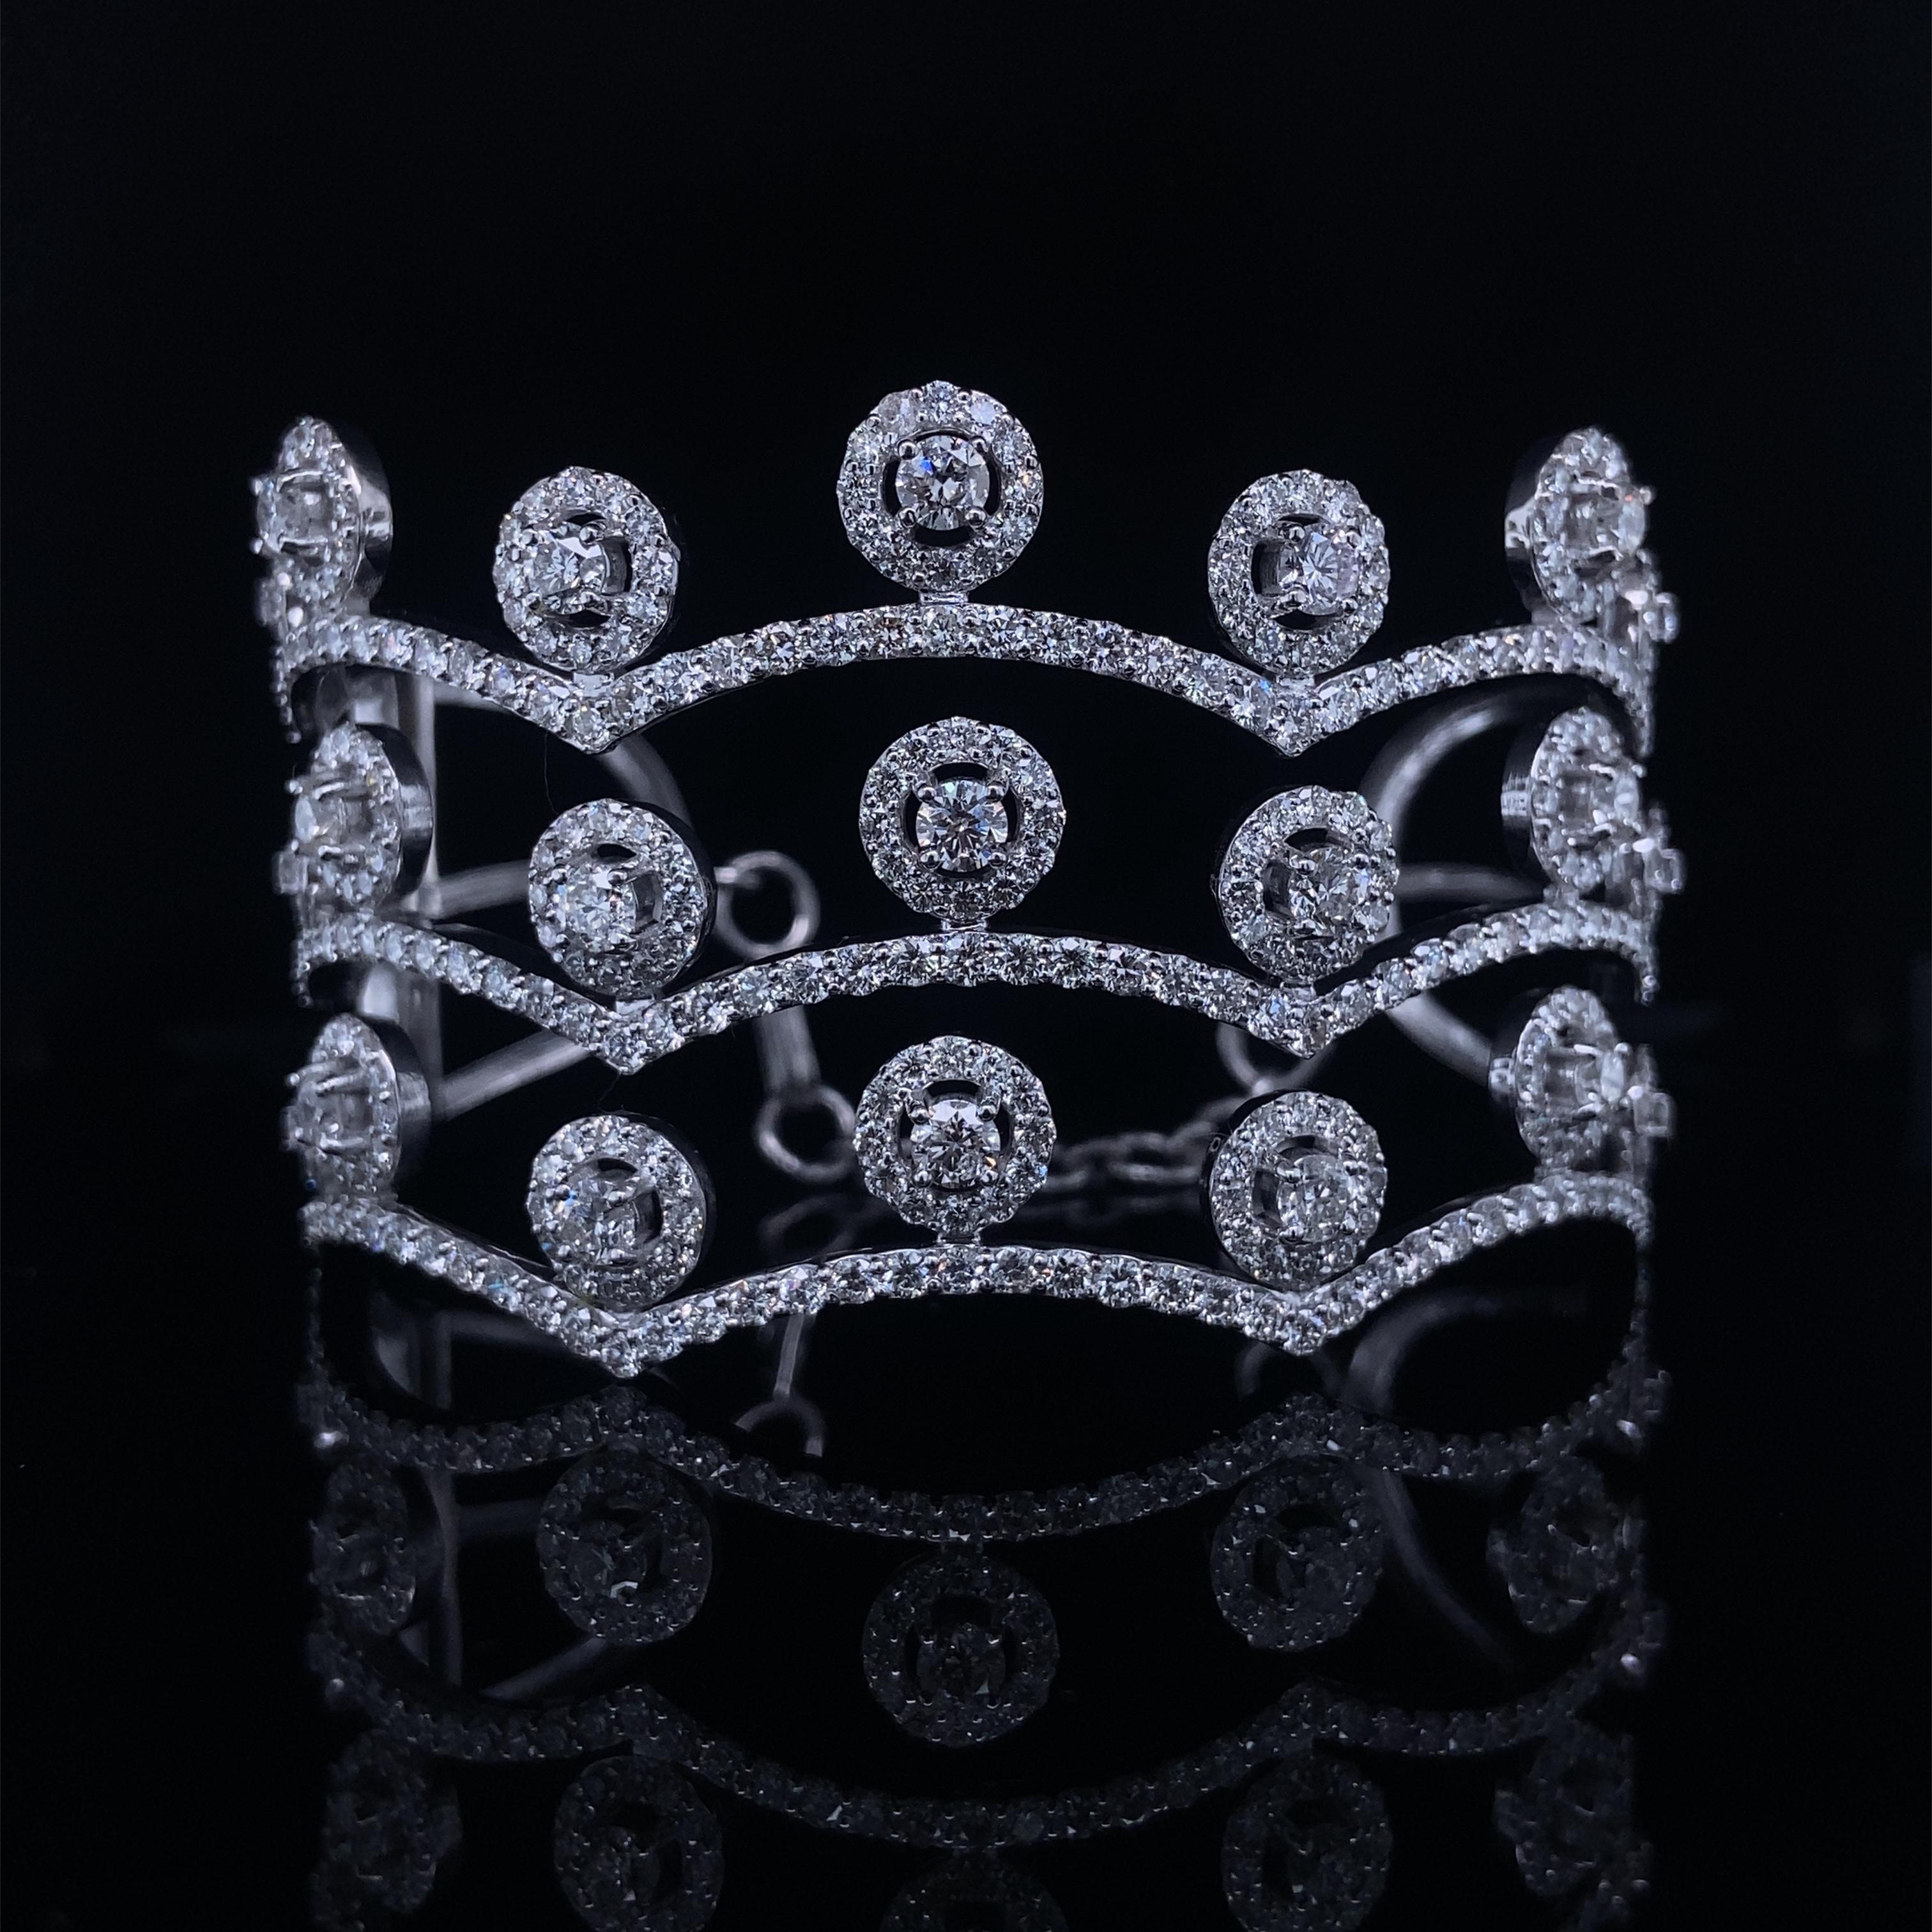 Le bracelet manchette à diamants en forme de couronne est un bijou exquis conçu avec élégance. Elle présente un superbe design de couronne méticuleusement serti de diamants étincelants, créant une apparence royale et luxueuse. Le bracelet est